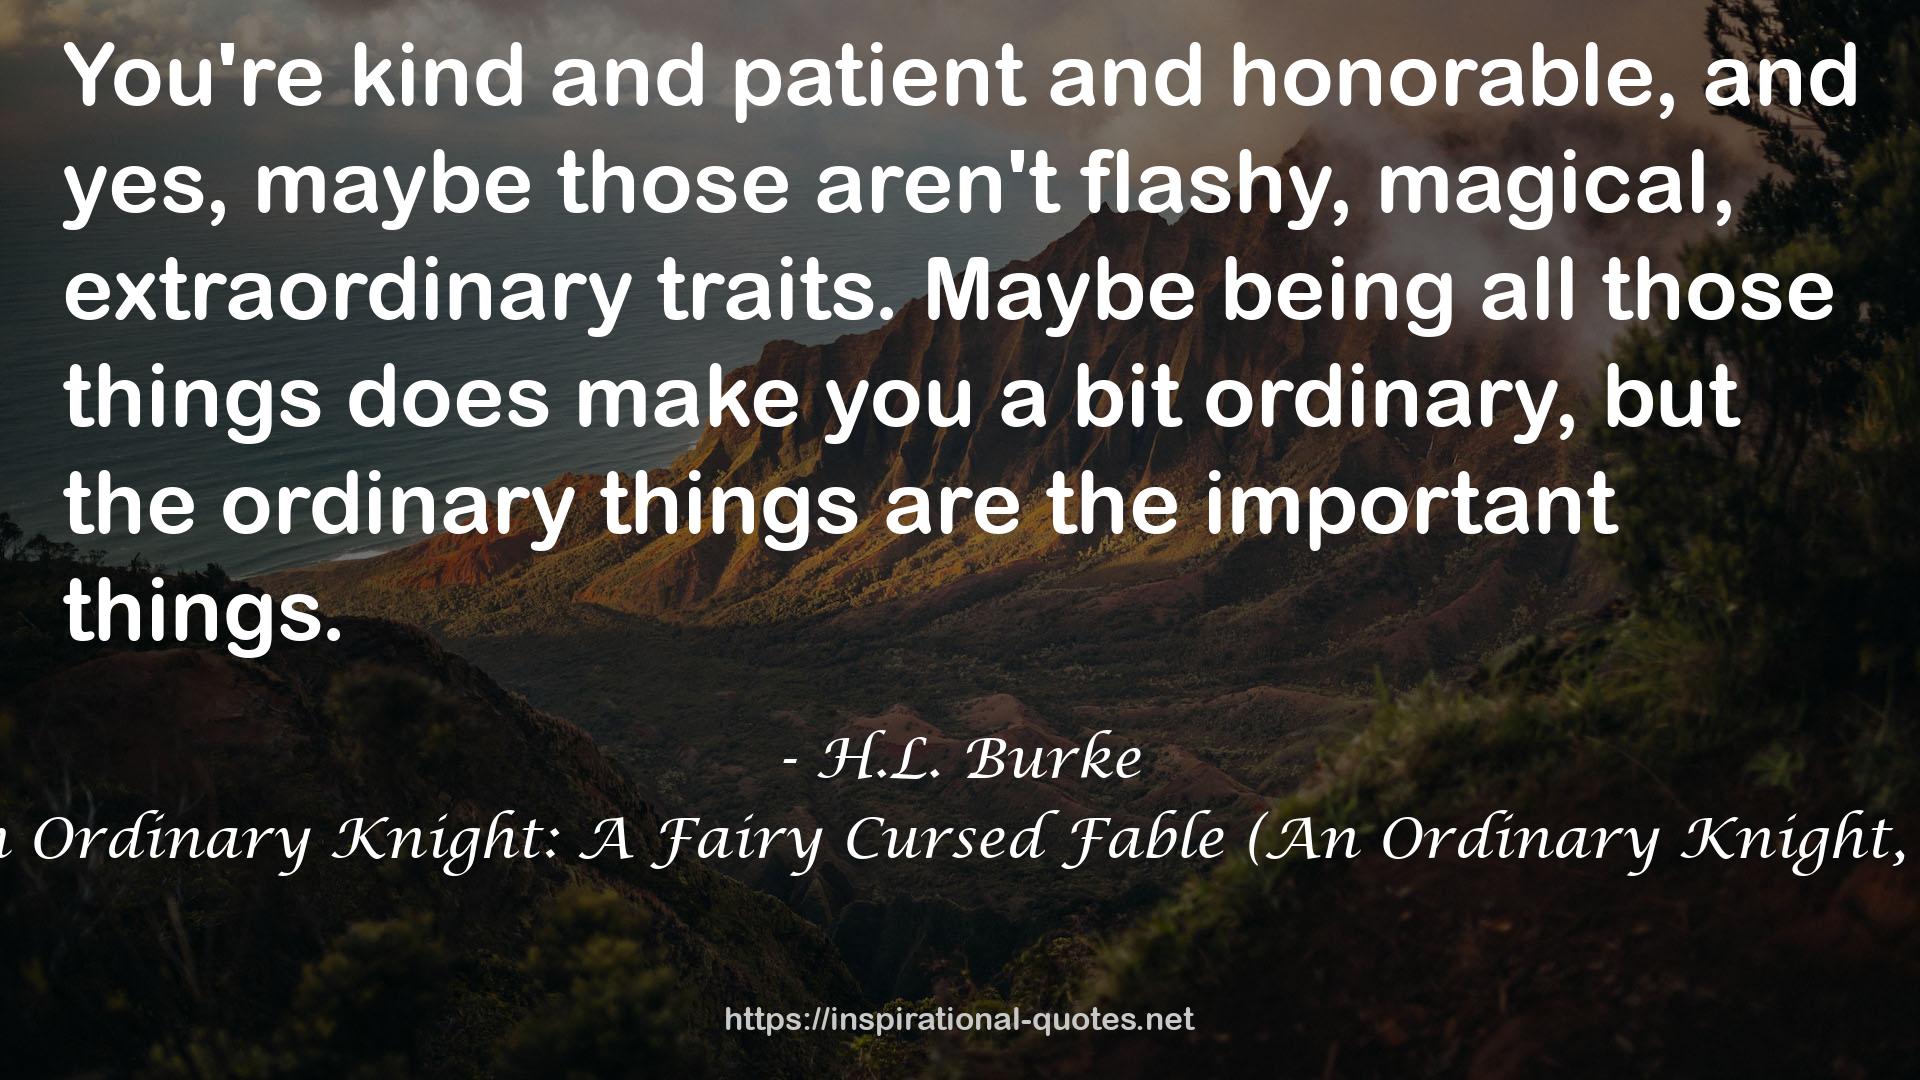 H.L. Burke QUOTES